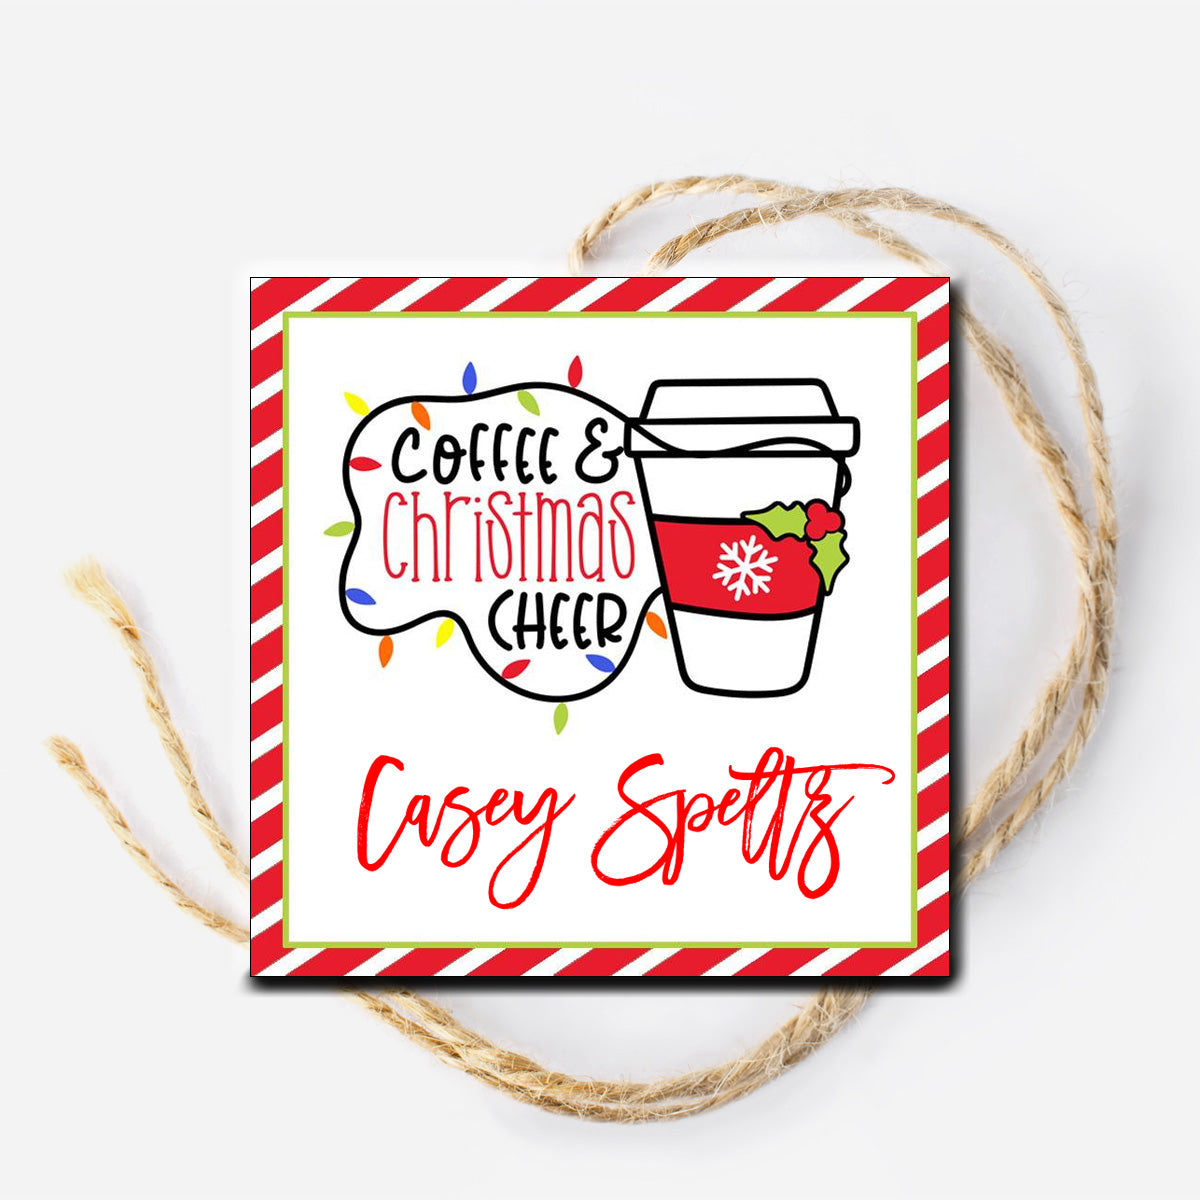 Coffee and Christmas Cheer Gift Tag